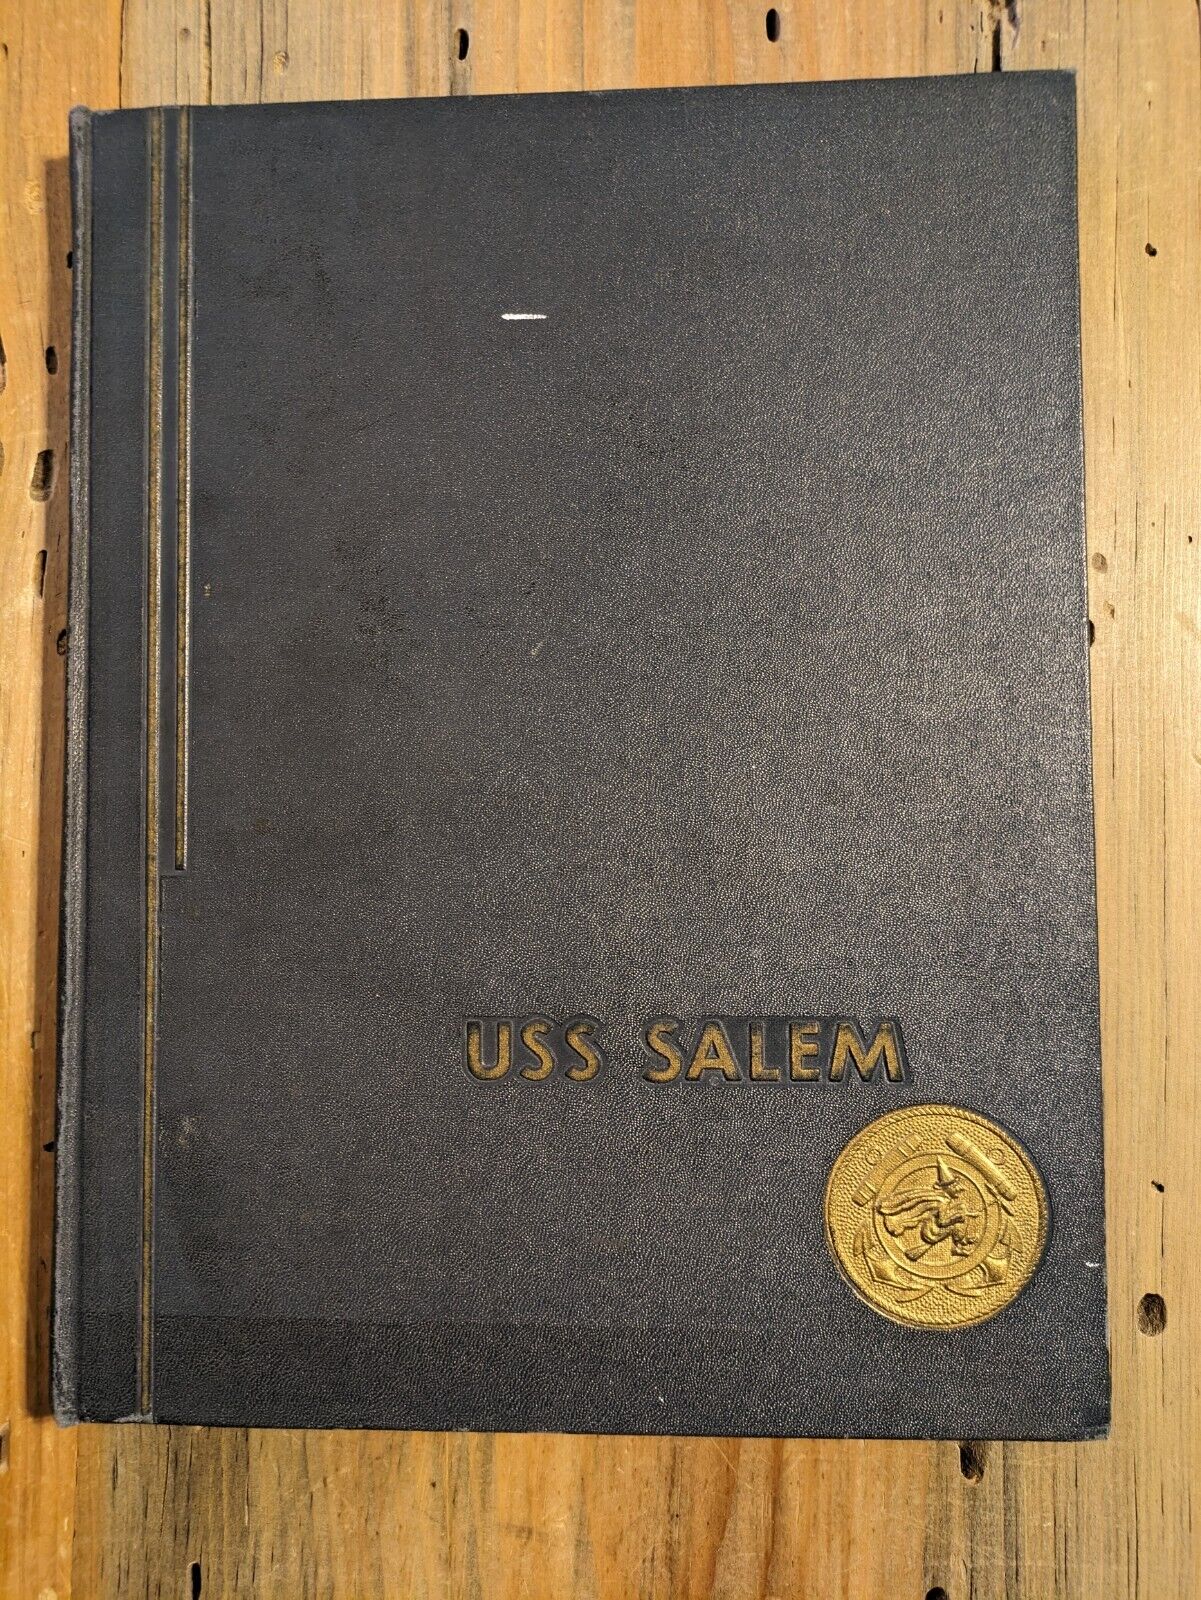 USS Salem (CA-139) 1952 Mediterranean Deployment Cruise Book